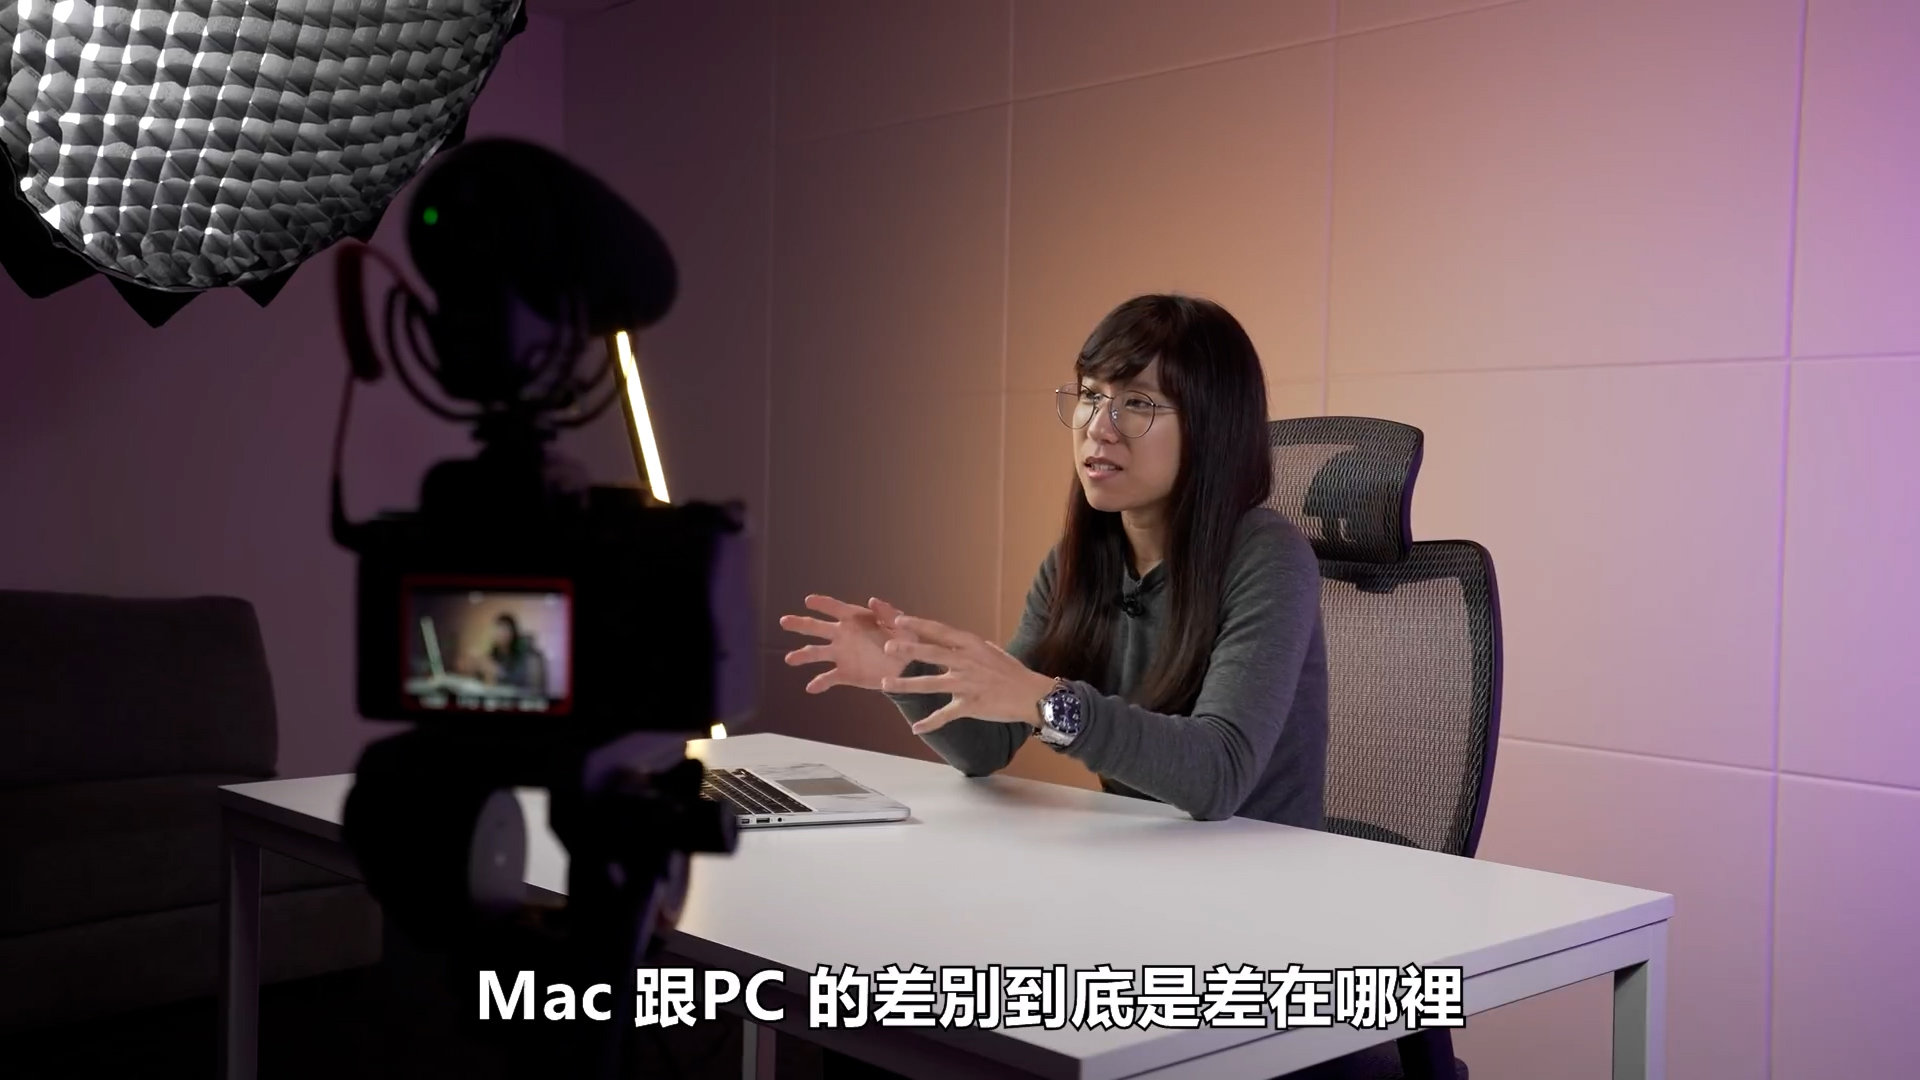 剪辑素材該用iMac 還是PC (剪辑師的一些经验和总结)